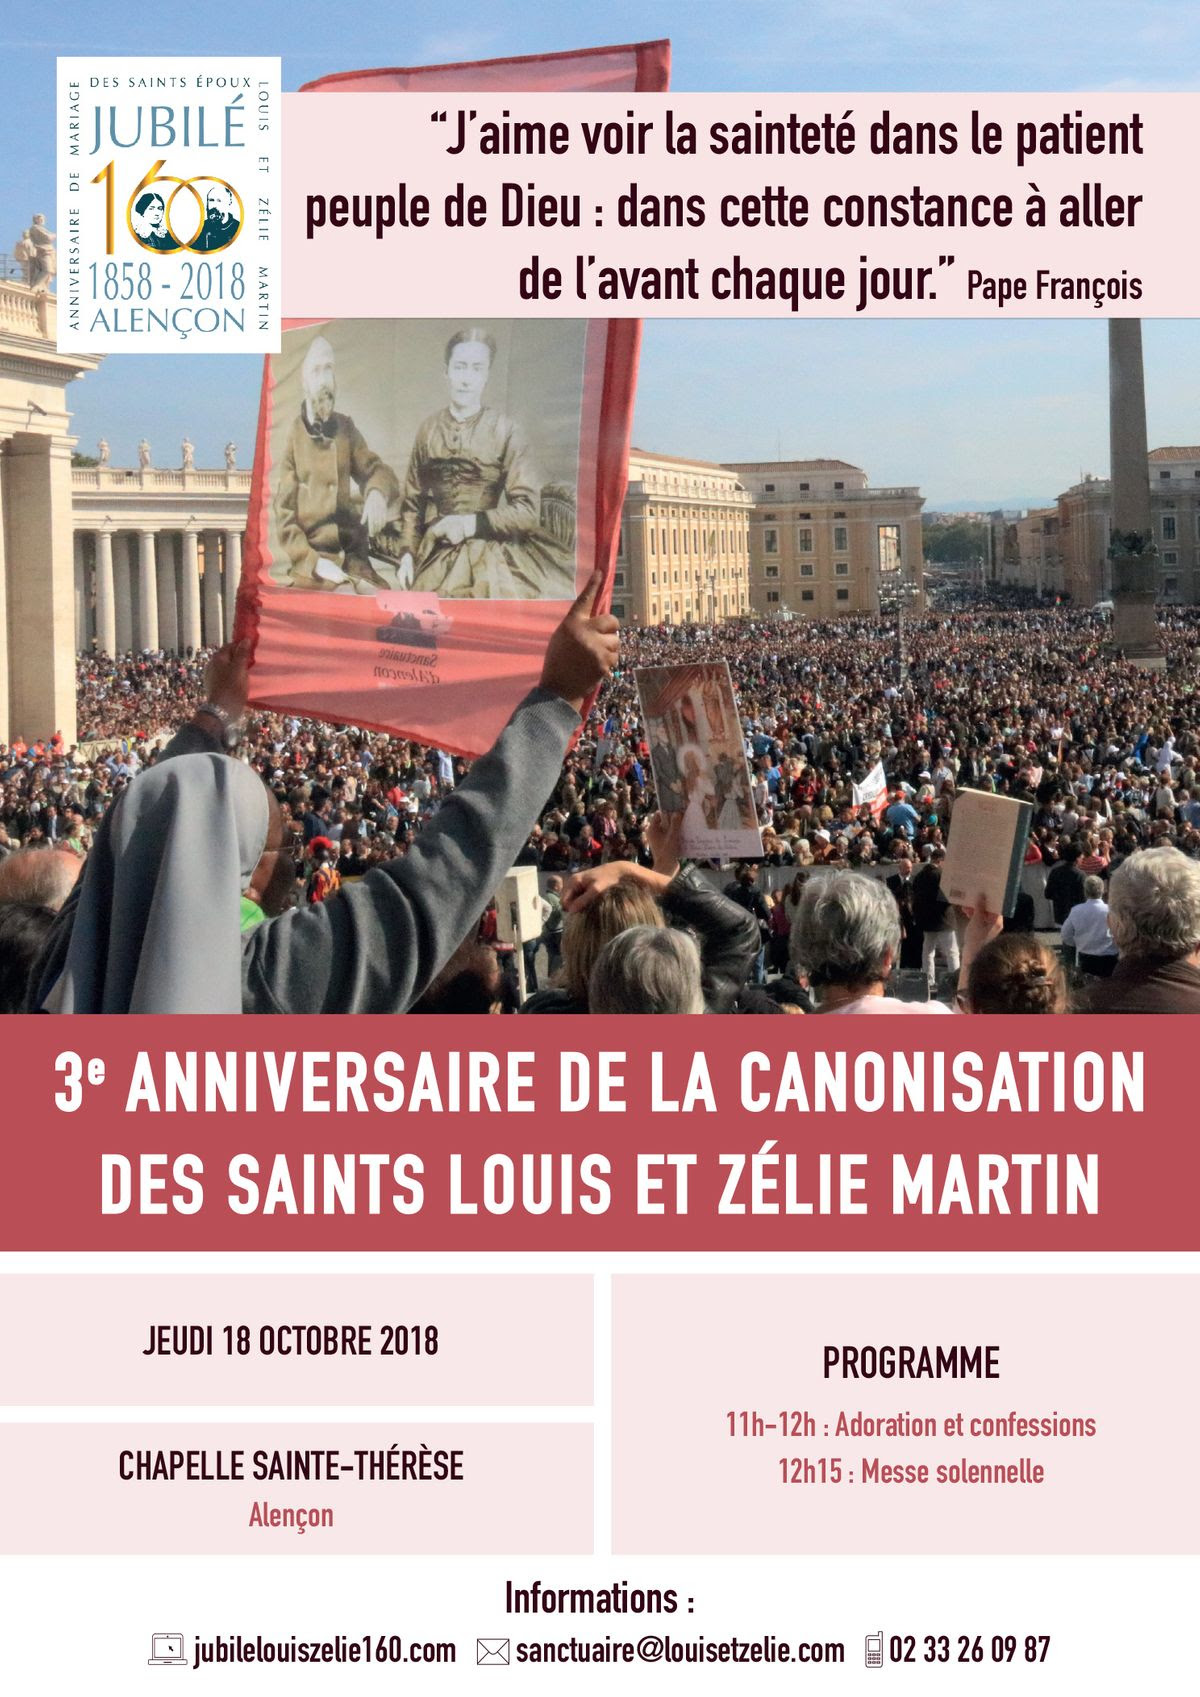 3e anniversaire de la canonisation des saints Louis et Zélie Martin le 18 octobre 2018 à Alençon (61)